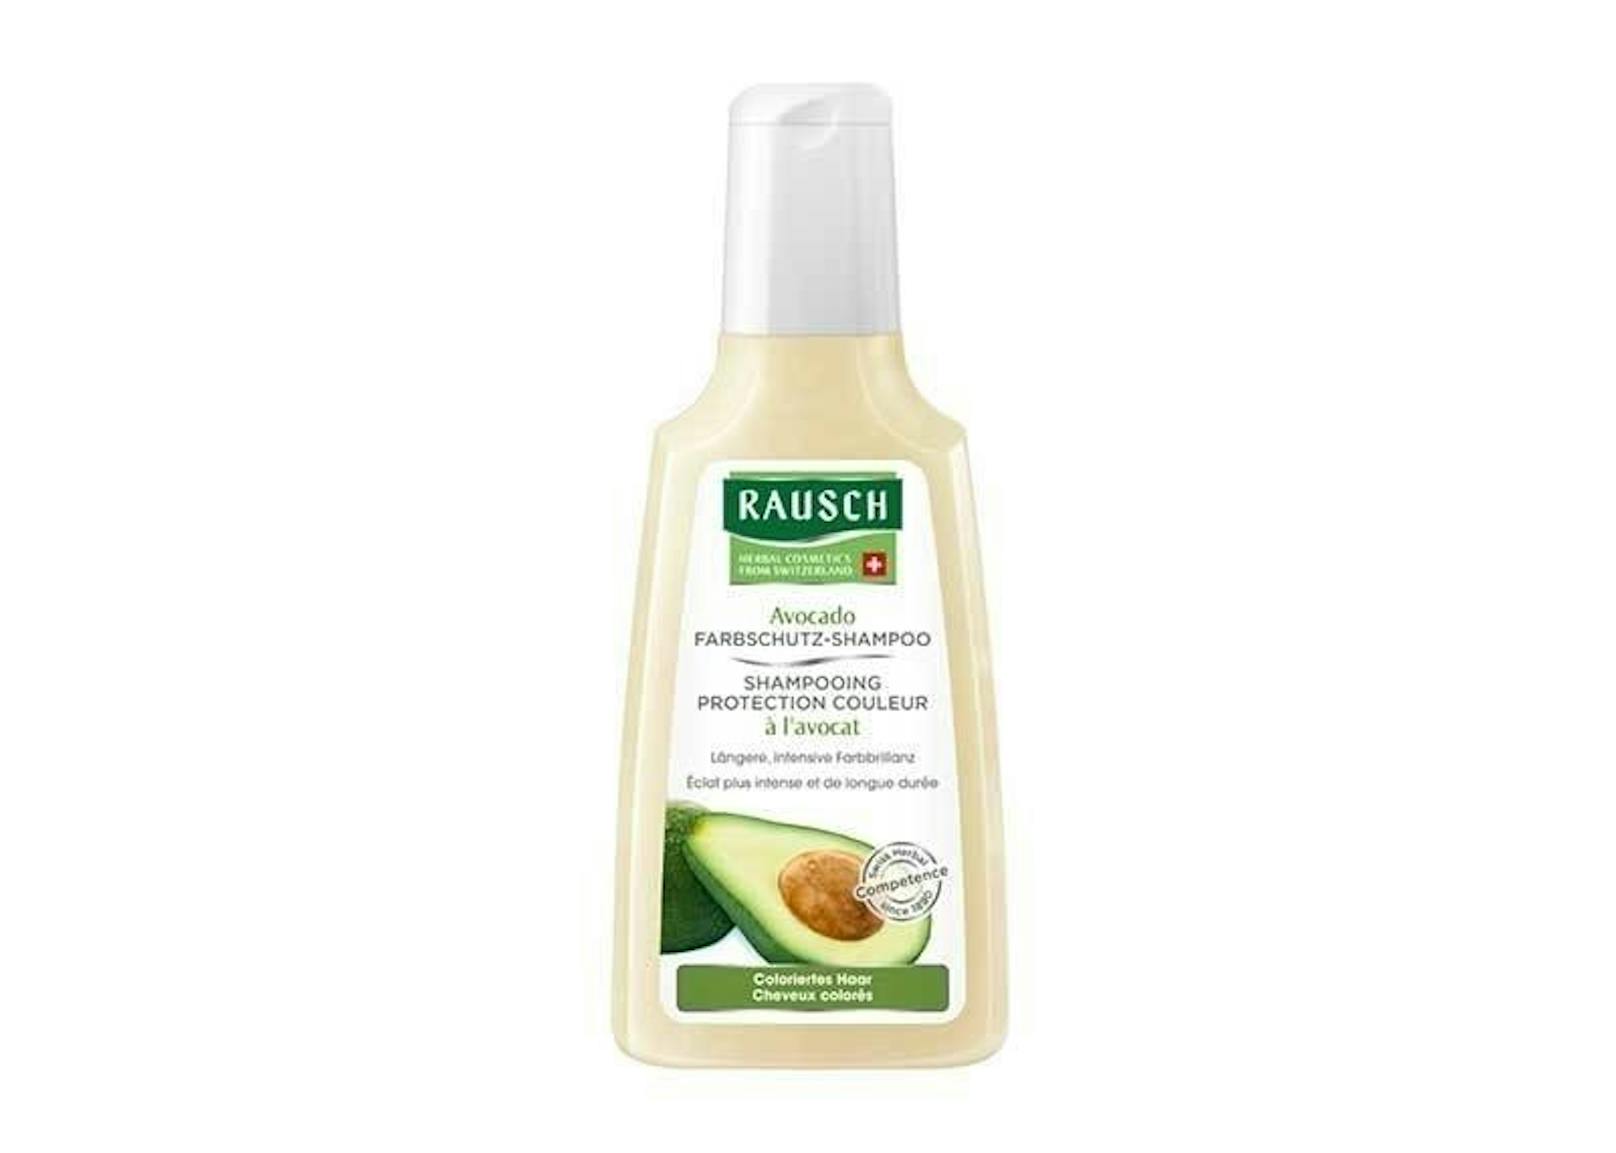 Das Avocado Farbschutz Shampoo von Rausch verhindert schnelles Ausbleichen. Darin enthalten: kostbares Avocado-Öl und Zinnkrautextrakt.